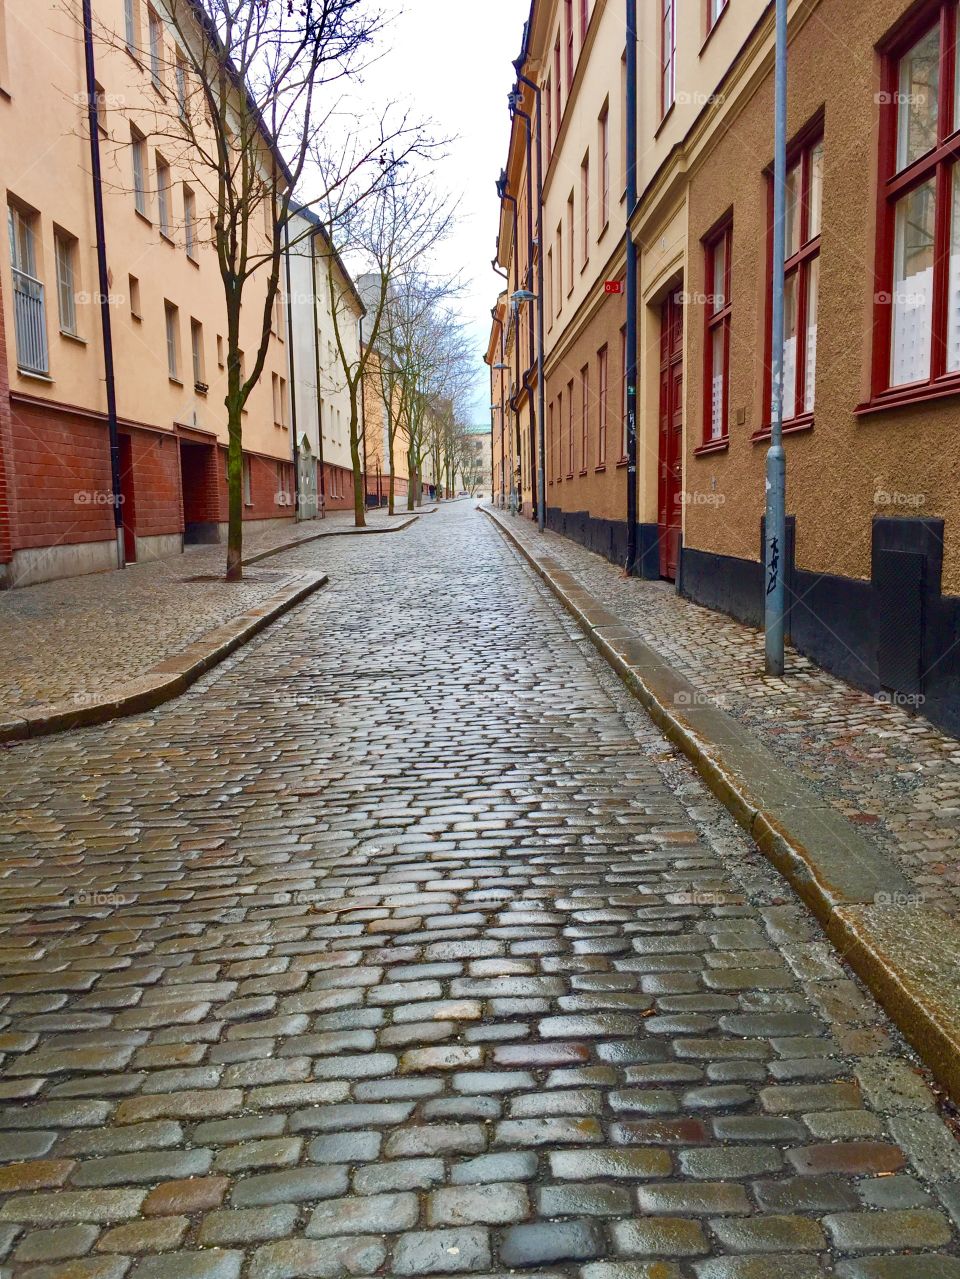 Wet, cobbled street